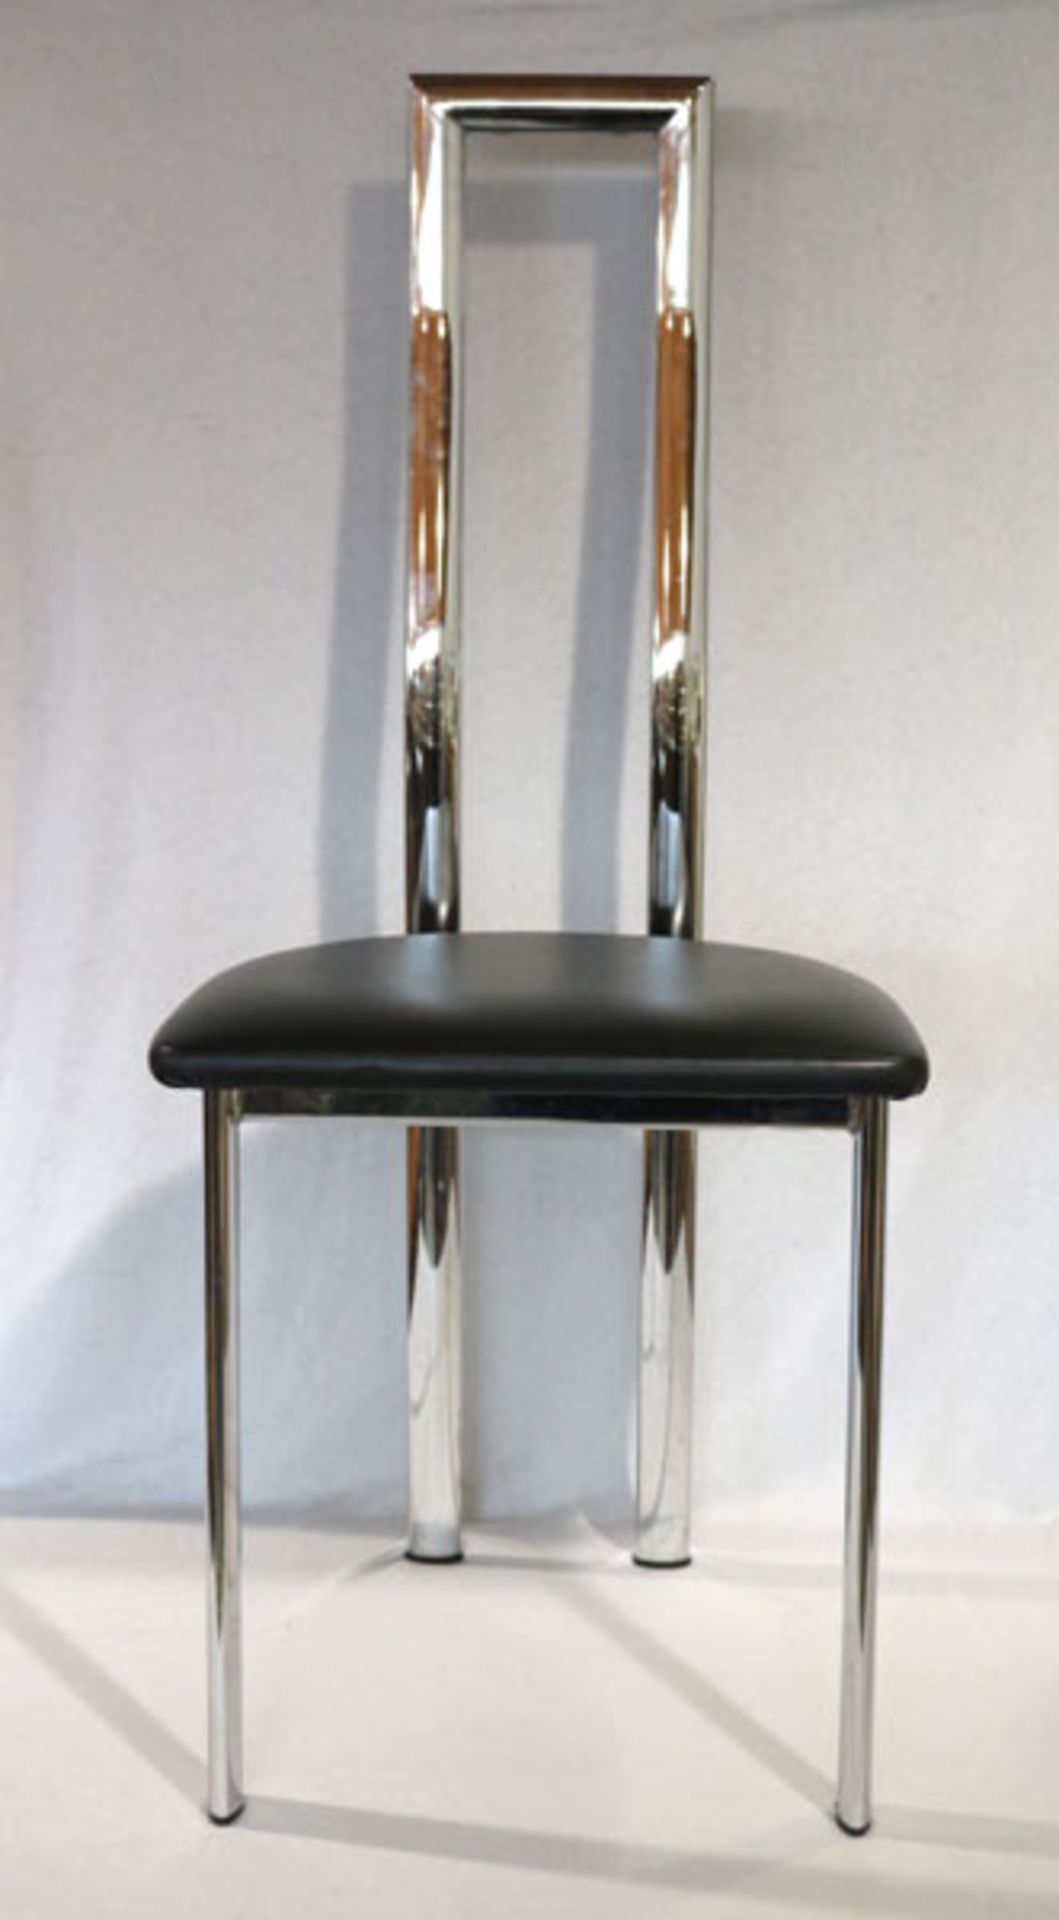 6 Designer Metall Stühle mit gepolstertem Sitz, schwarz bezogen, H 106 cm, B 44 cm, T 39 cm,